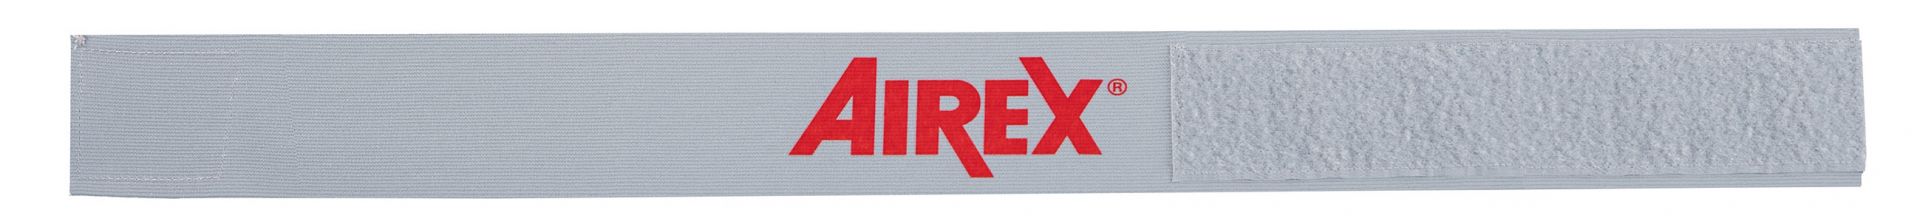 AIREX - Flexibles Mattenhalteband - Silber